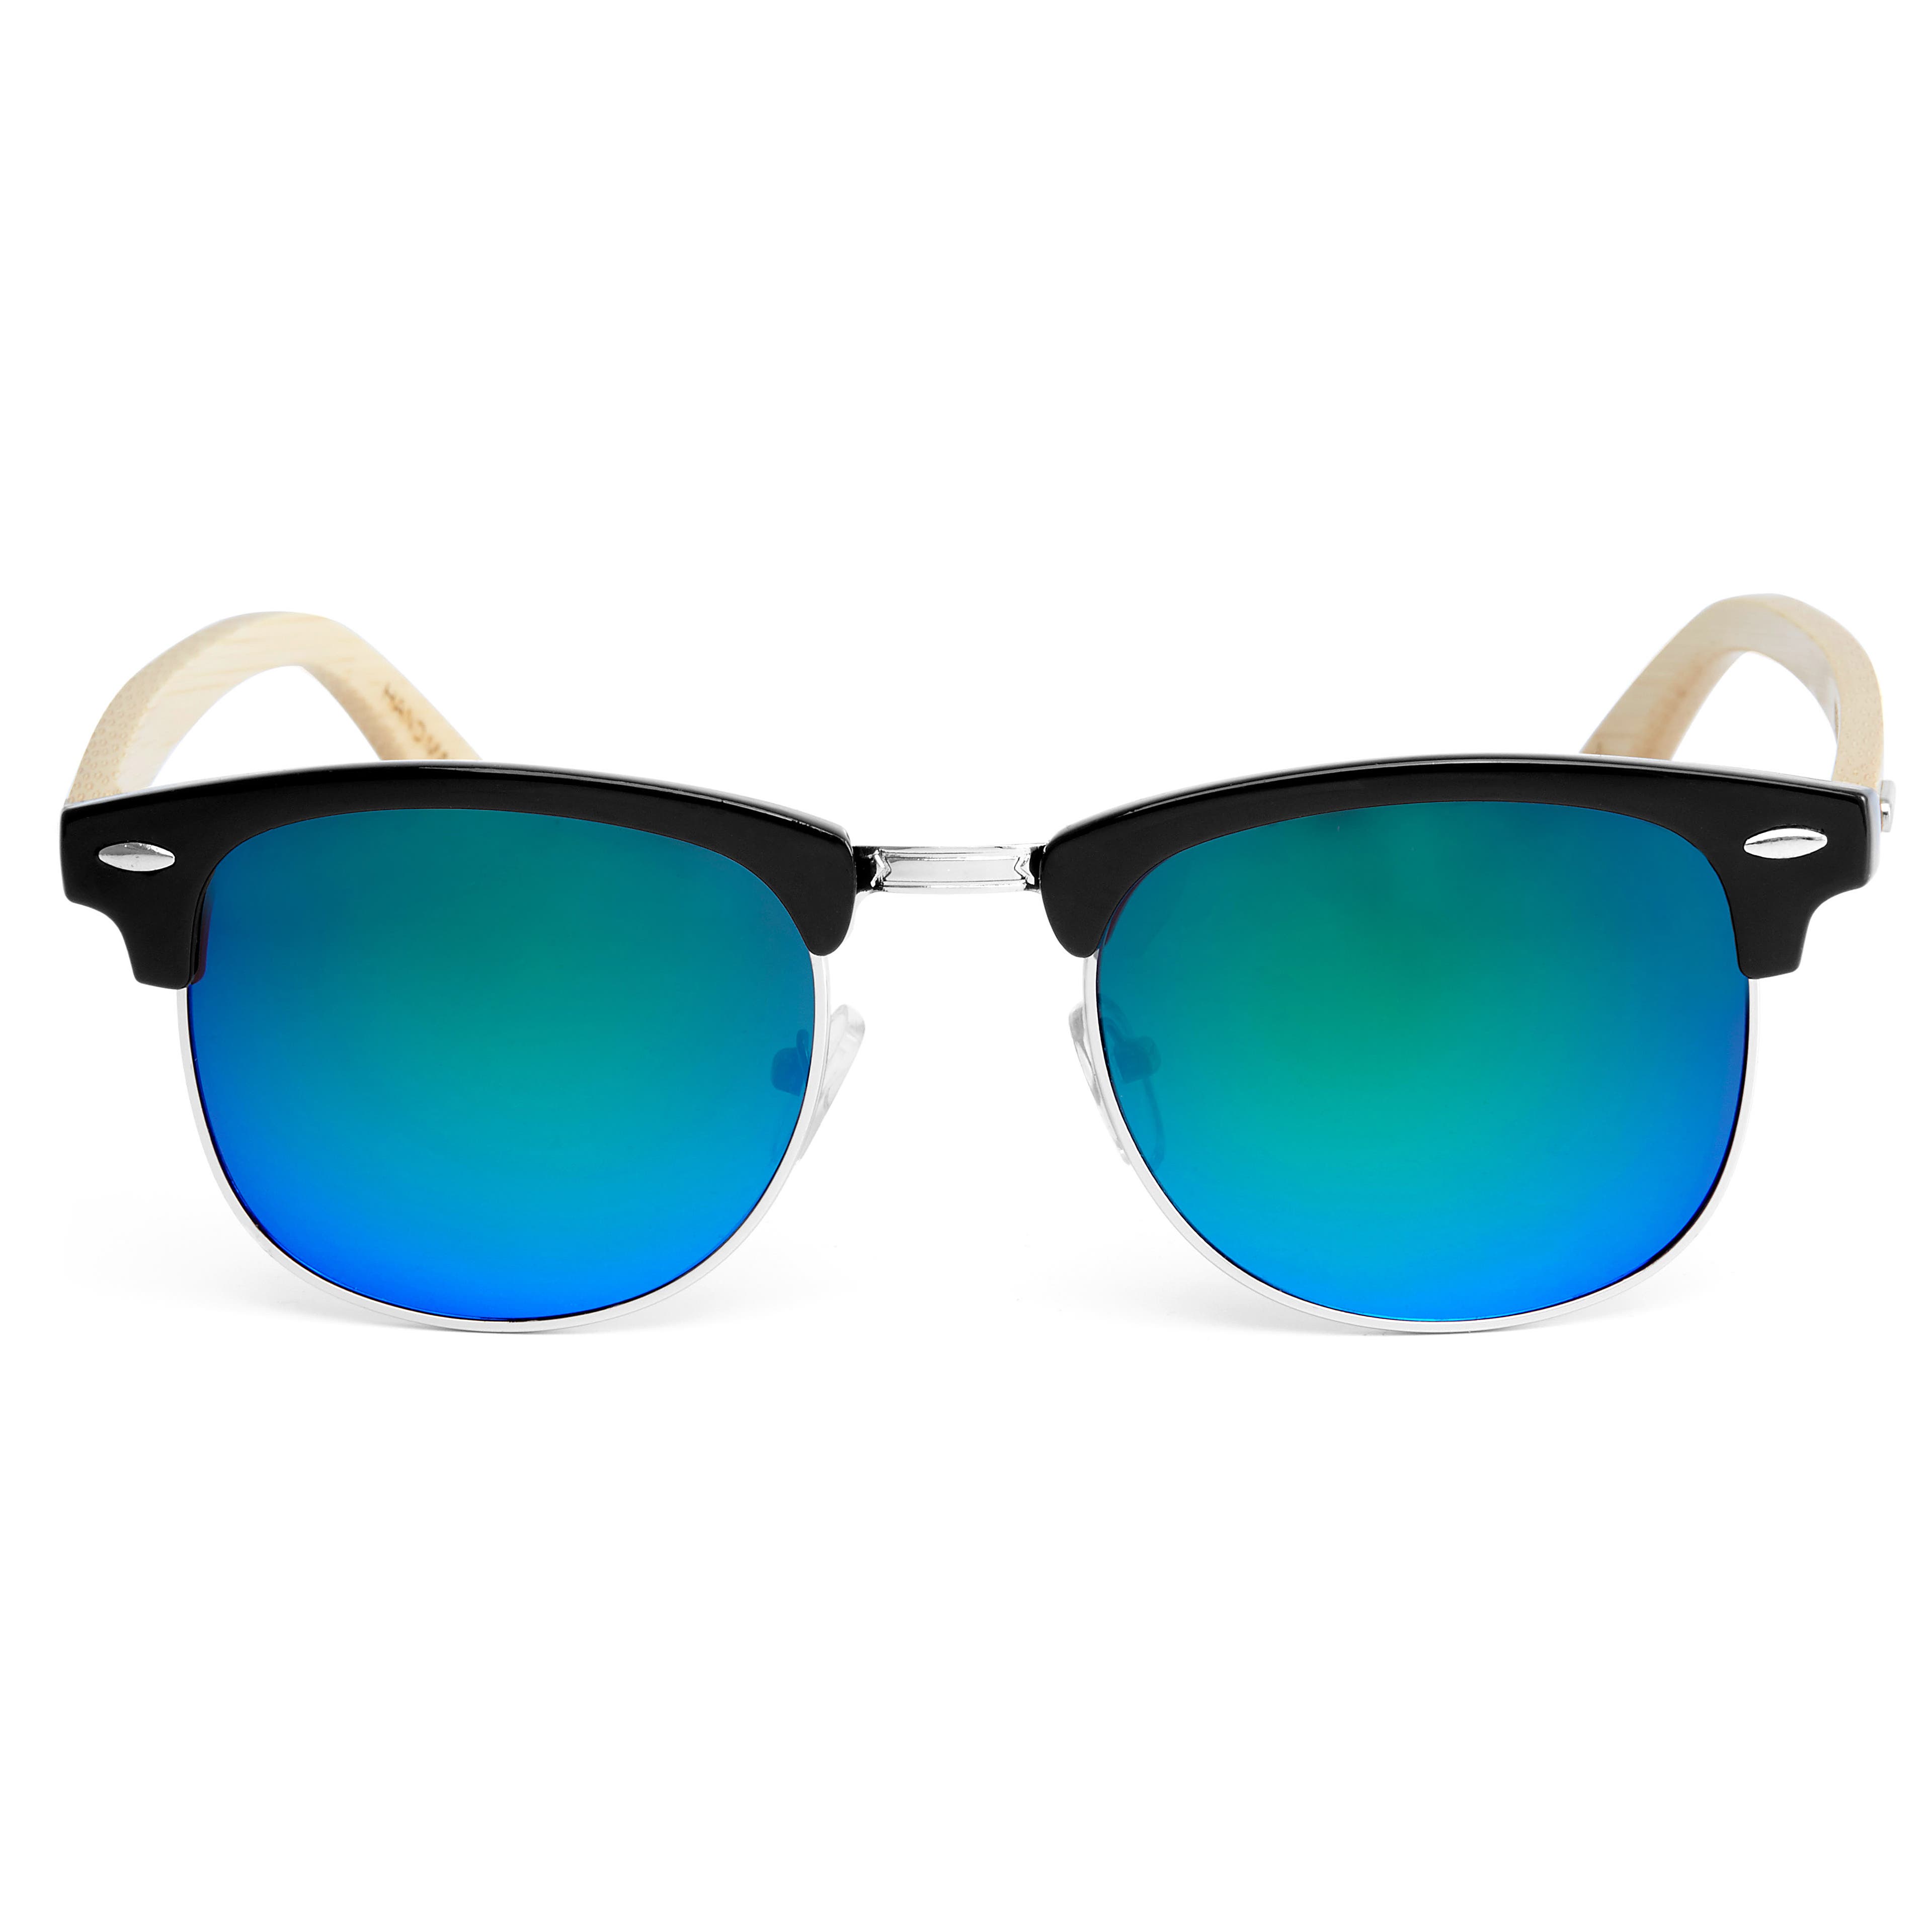 Blue-Green Wood Sunglasses